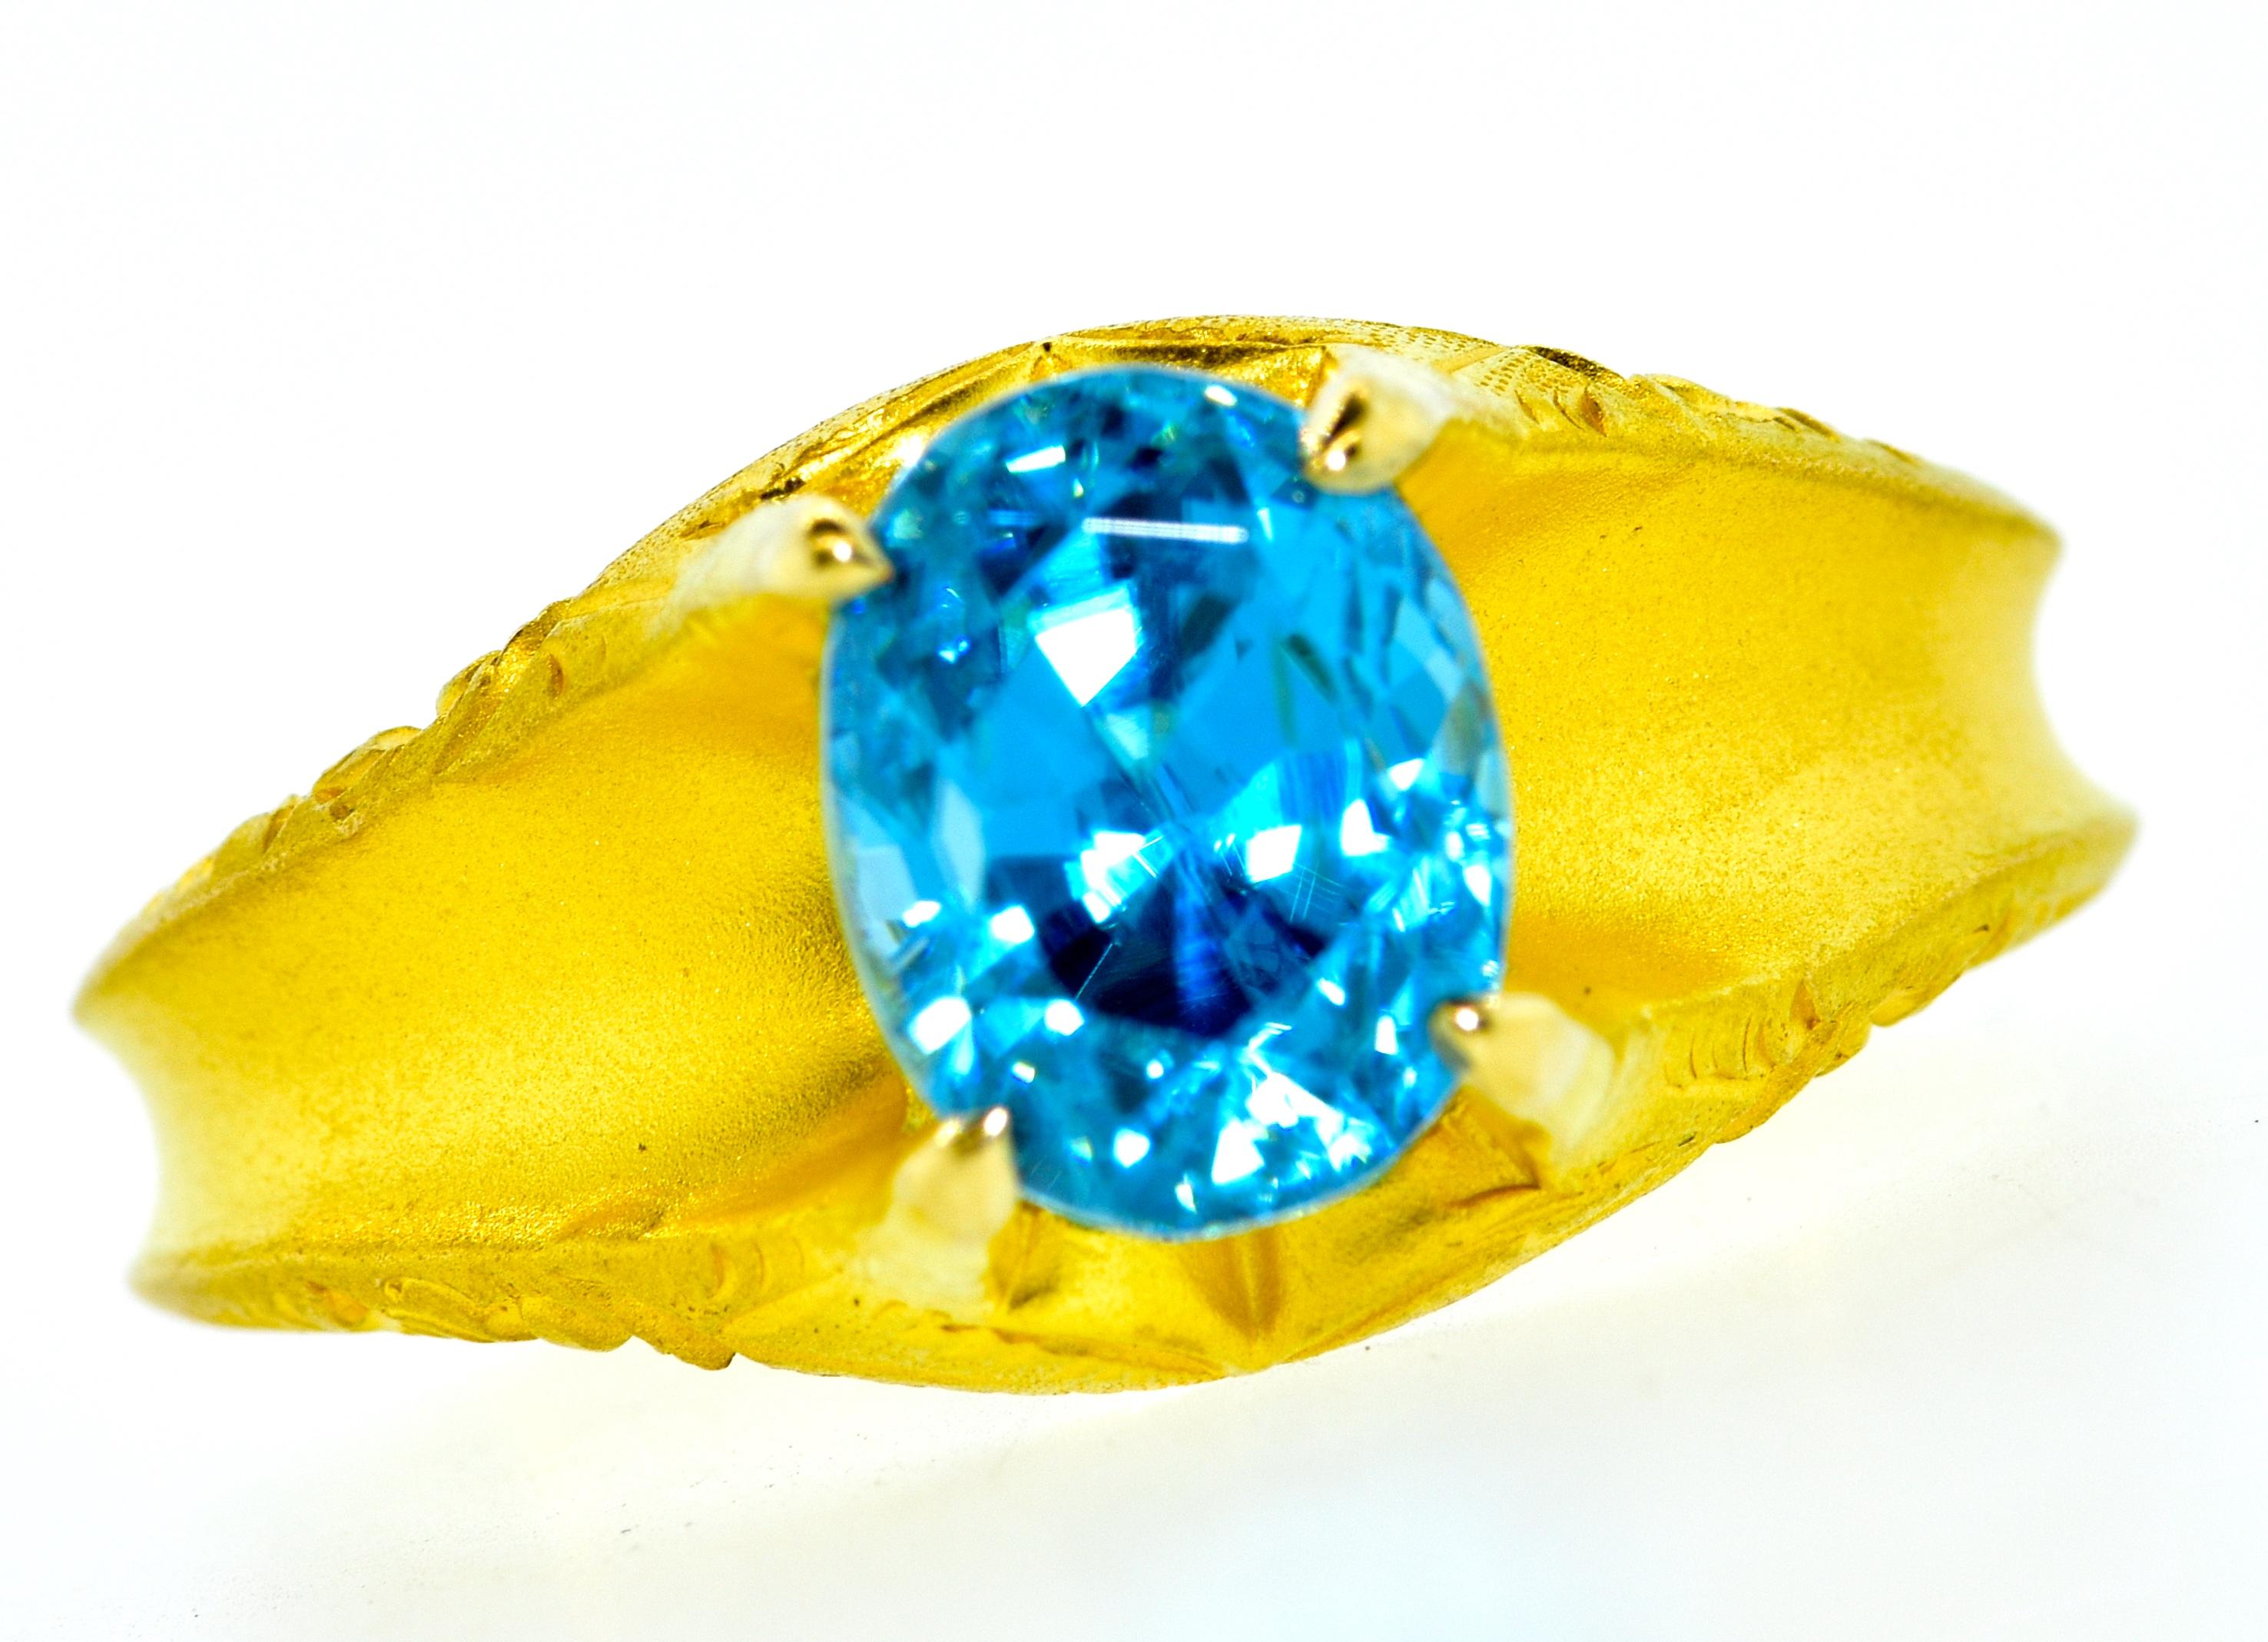 Brilliant Cut Victorian Gold Ring Centering a Natural Very Fine Blue Zircon, circa 1890